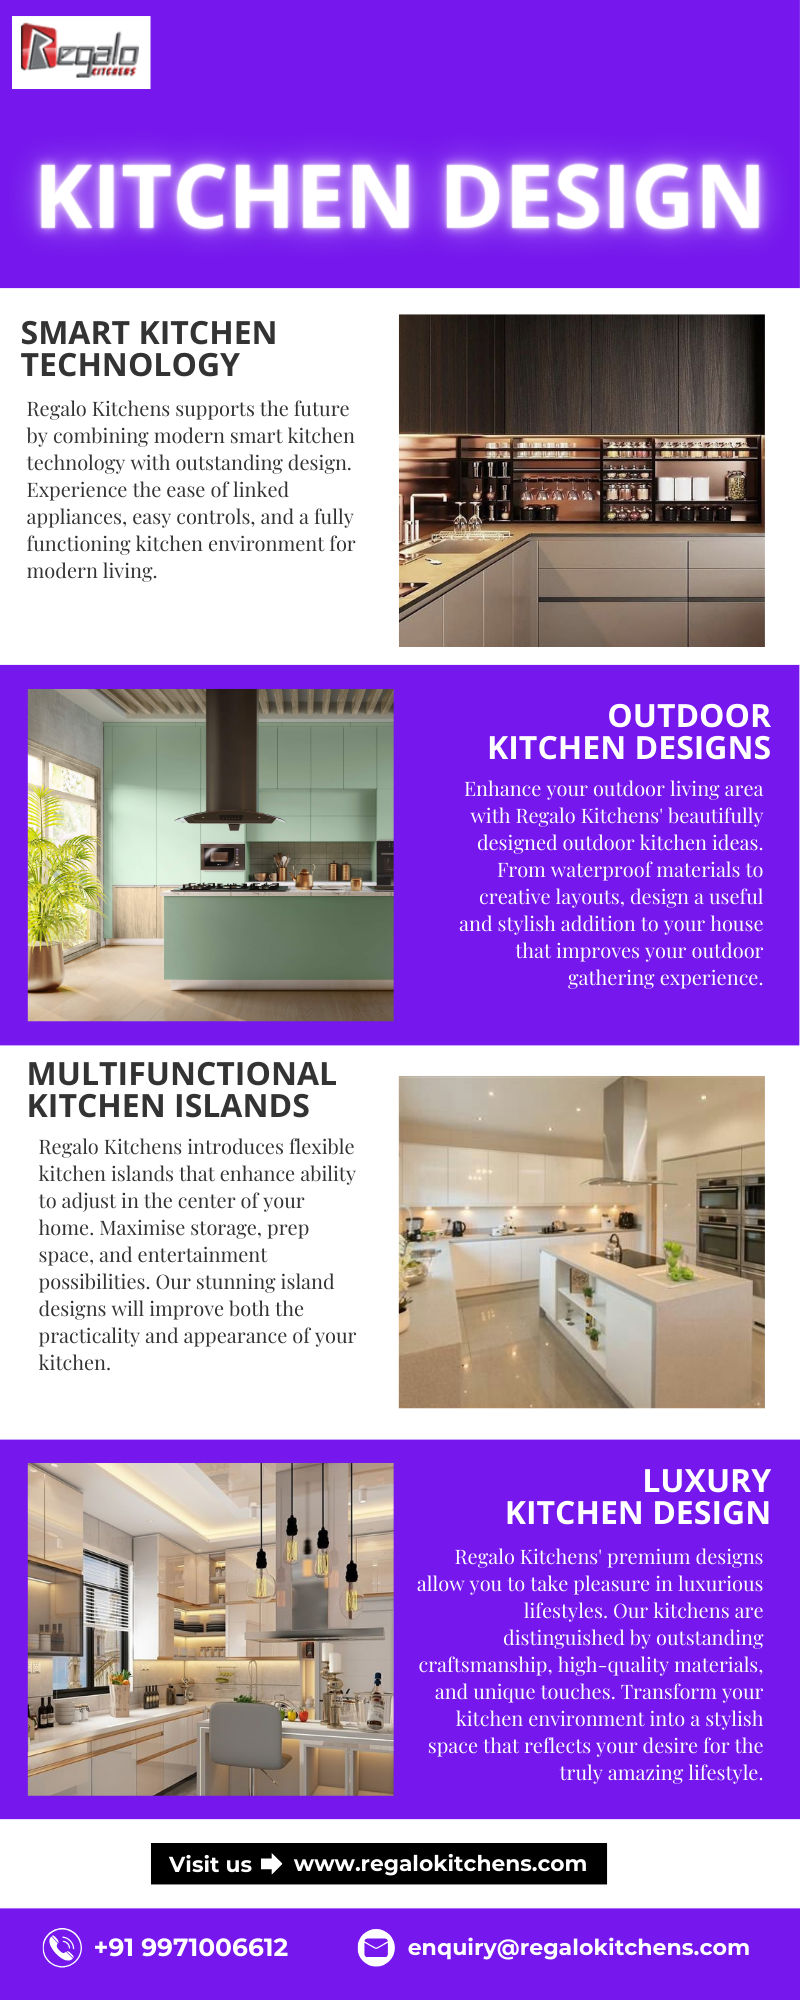 Kitchen Design - Regalo Kitchens - Medium